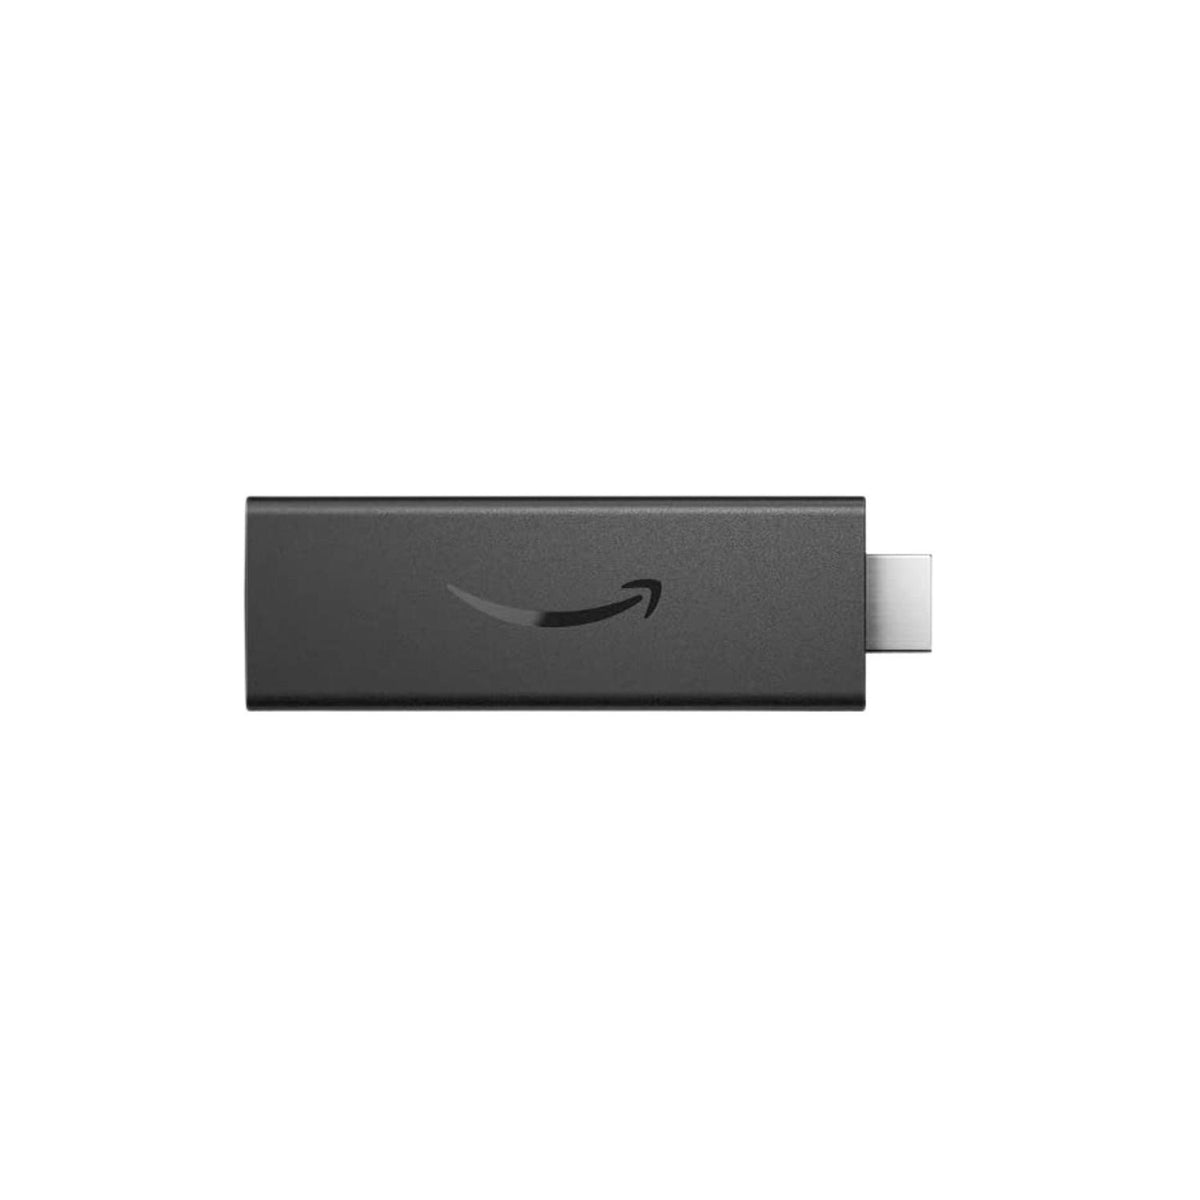 Amazon  Dispositivo para Streaming con Control Fire TV Stick HD - vertikal